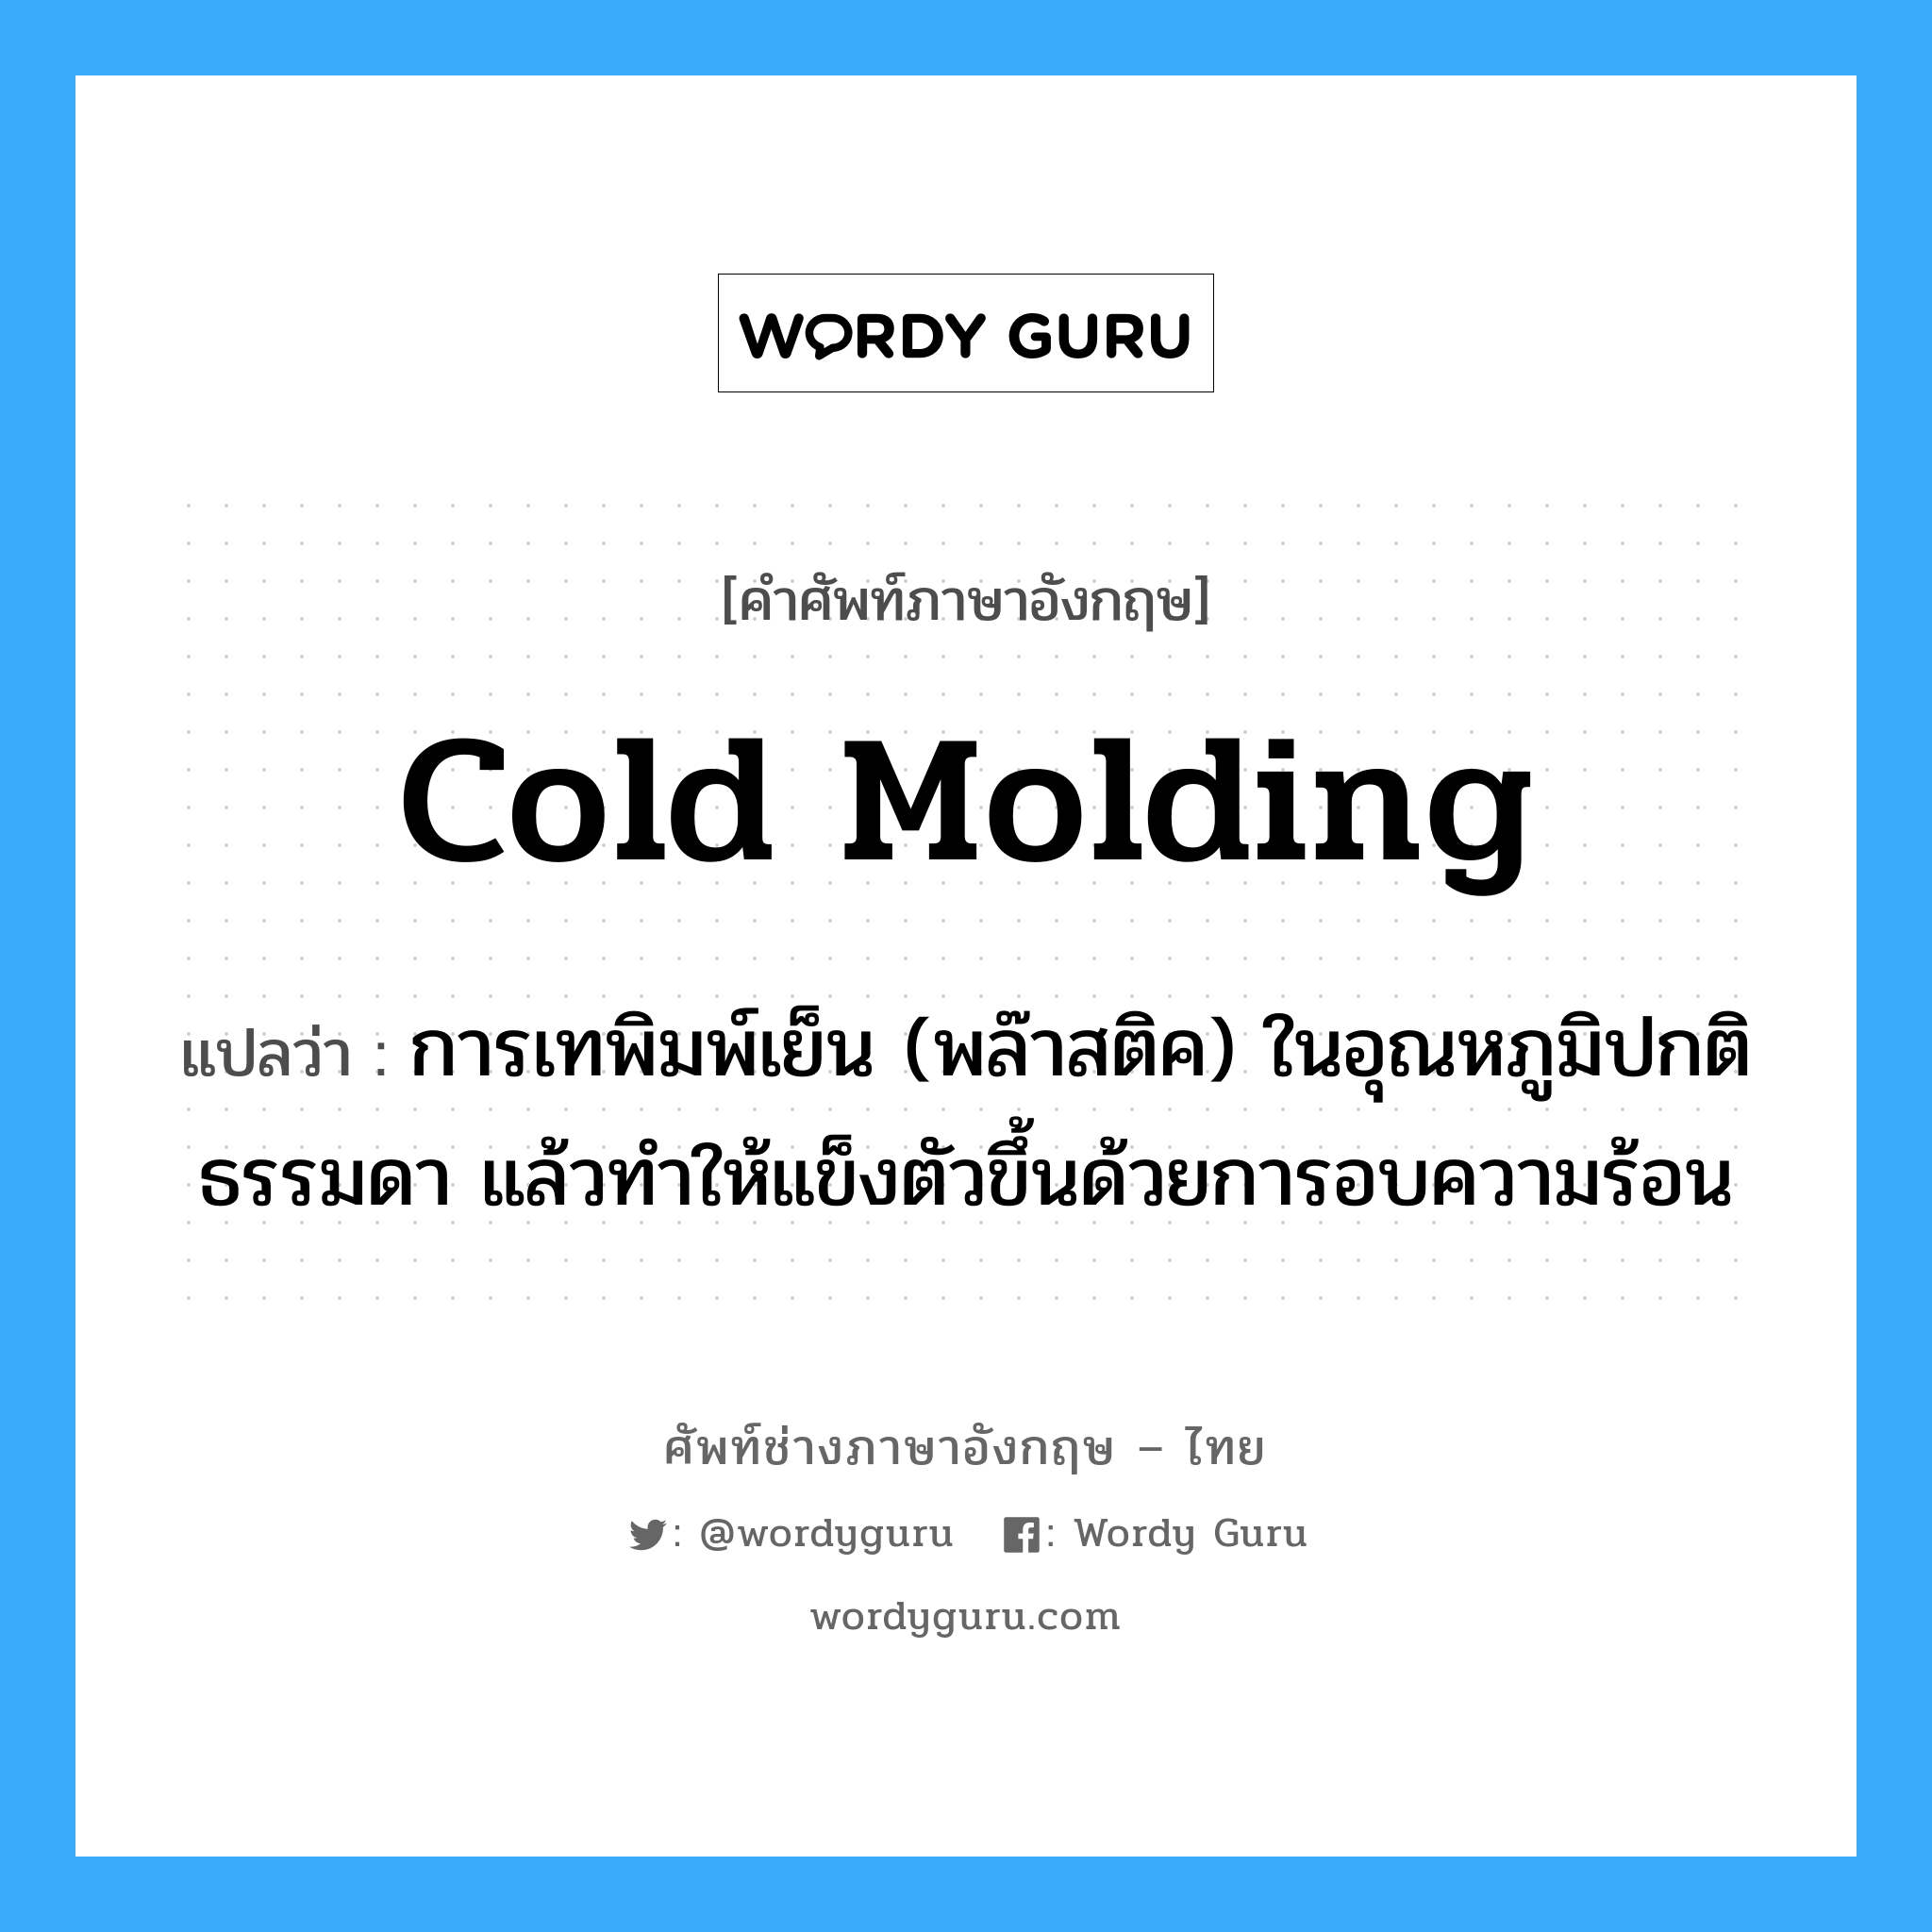 cold molding แปลว่า?, คำศัพท์ช่างภาษาอังกฤษ - ไทย cold molding คำศัพท์ภาษาอังกฤษ cold molding แปลว่า การเทพิมพ์เย็น (พล๊าสติค) ในอุณหภูมิปกติธรรมดา แล้วทำให้แข็งตัวขึ้นด้วยการอบความร้อน